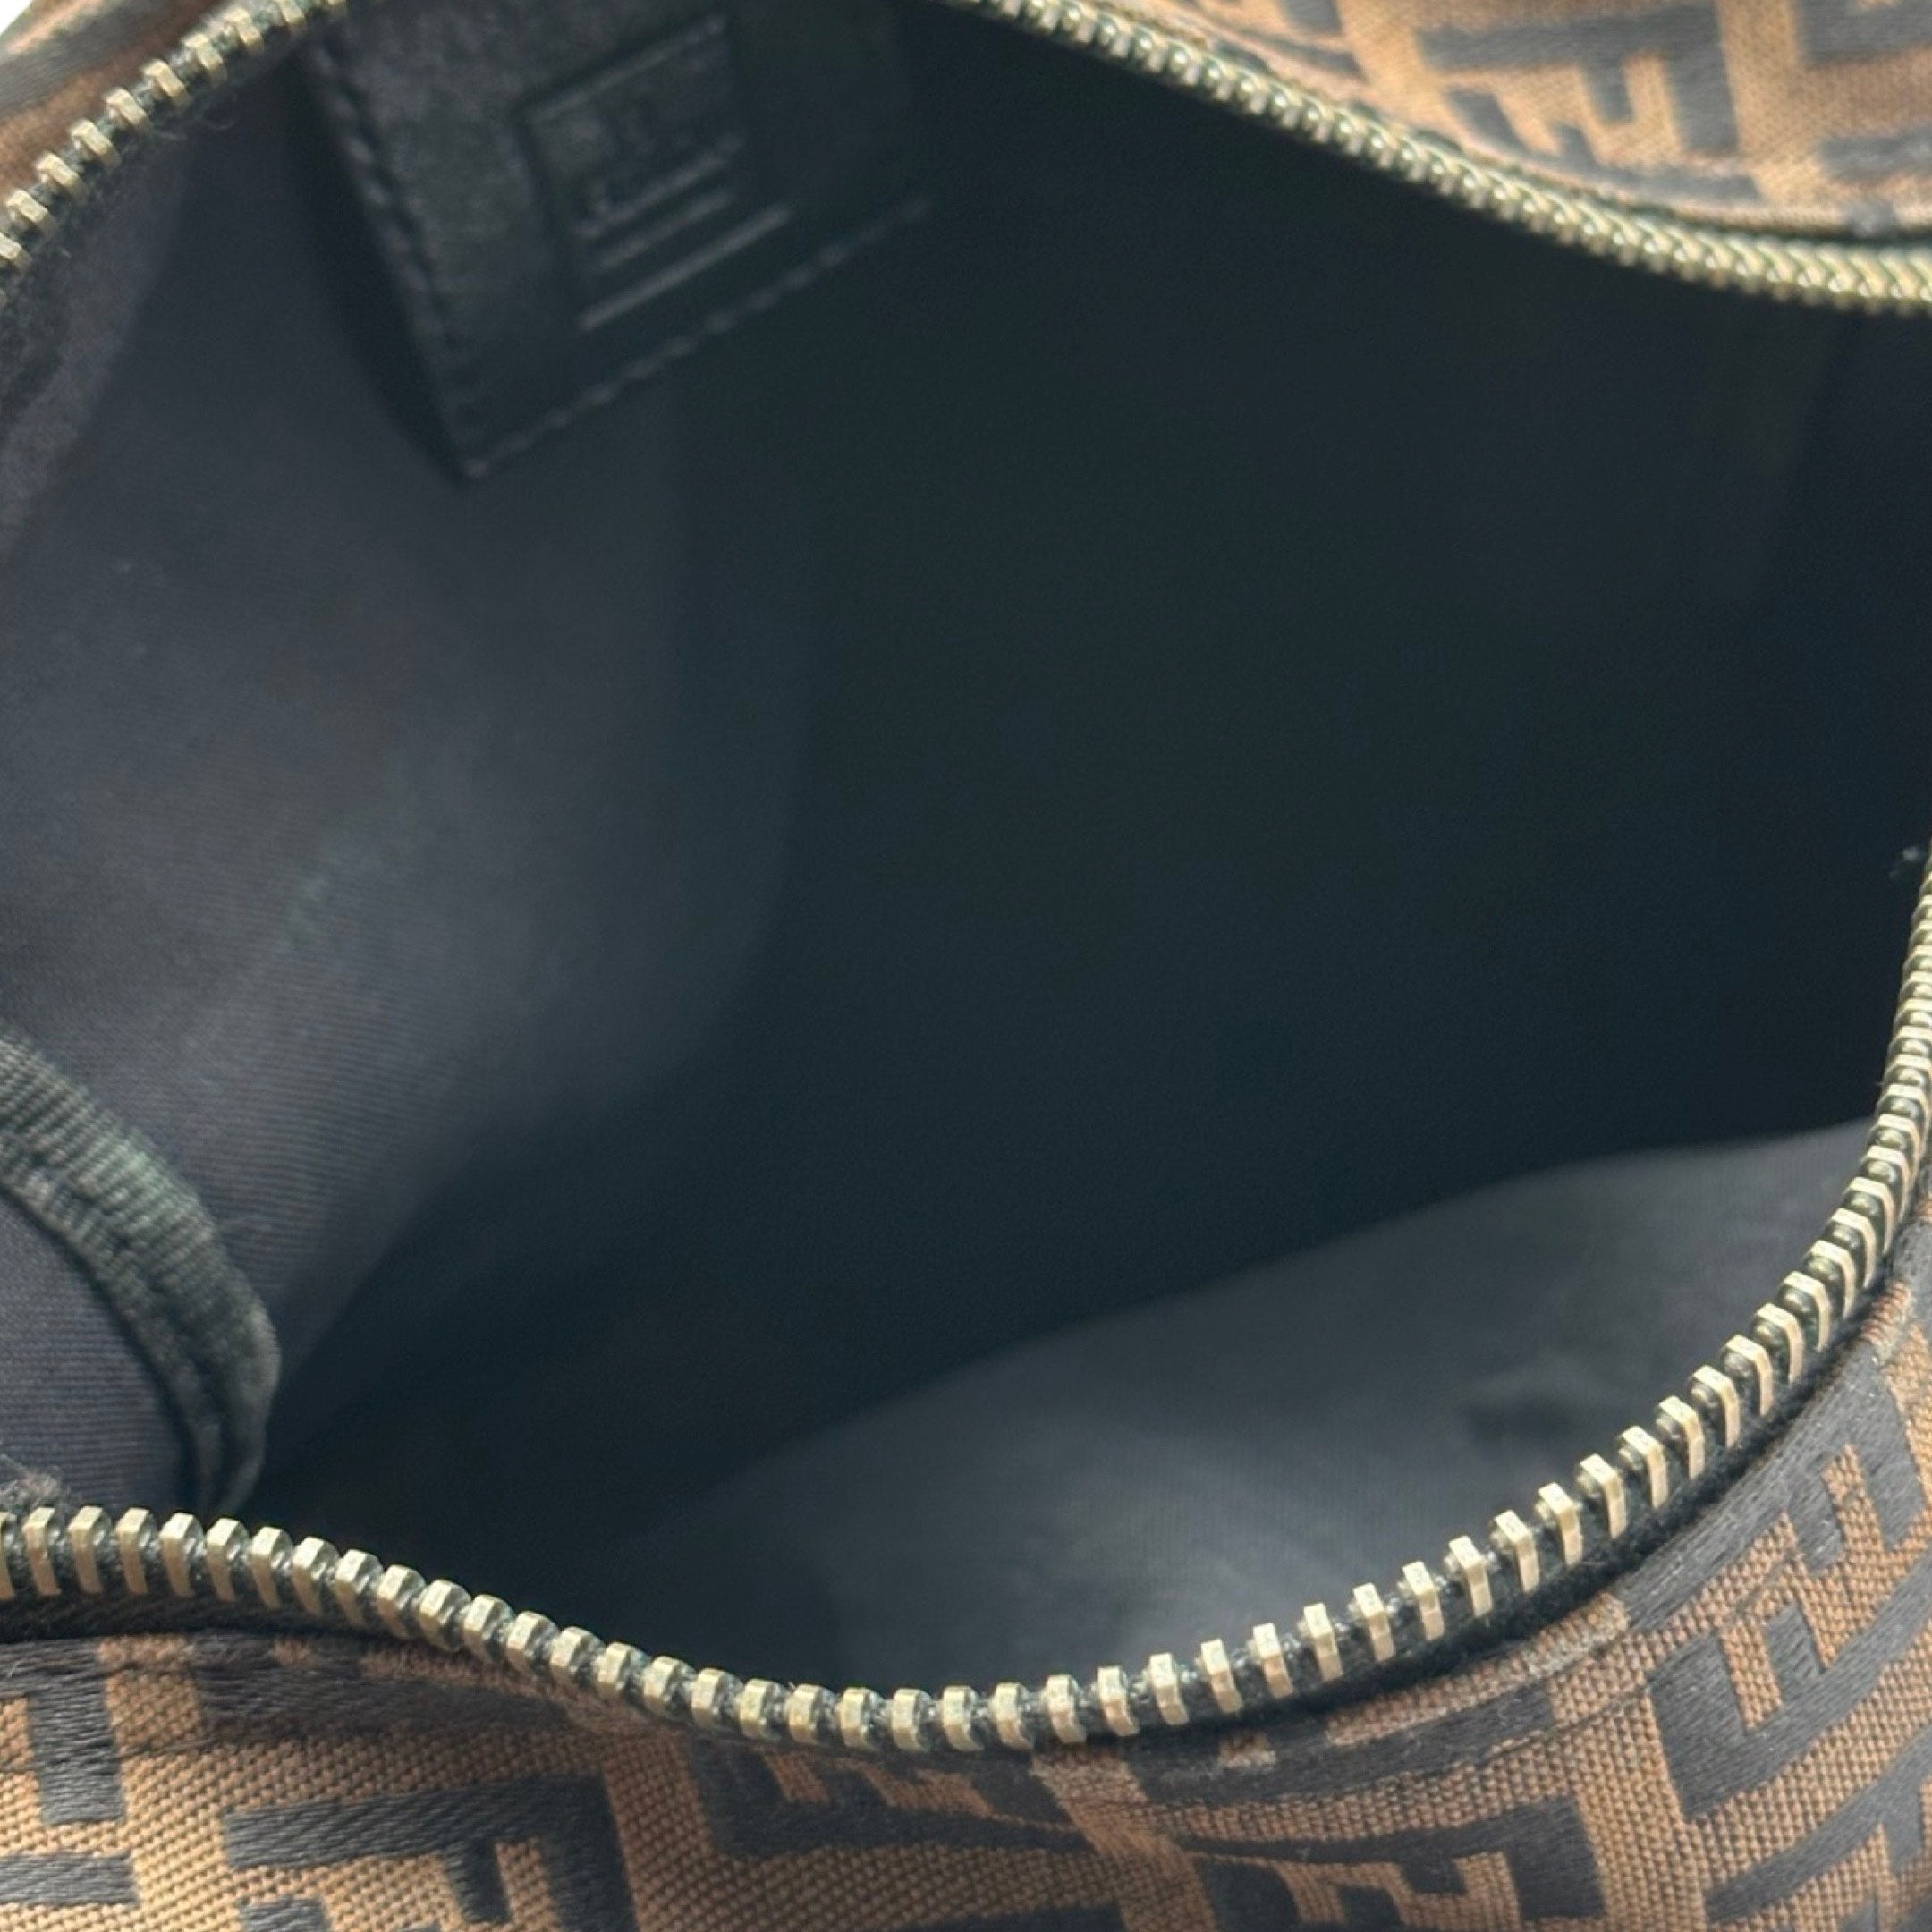 Fendi Black Handbag